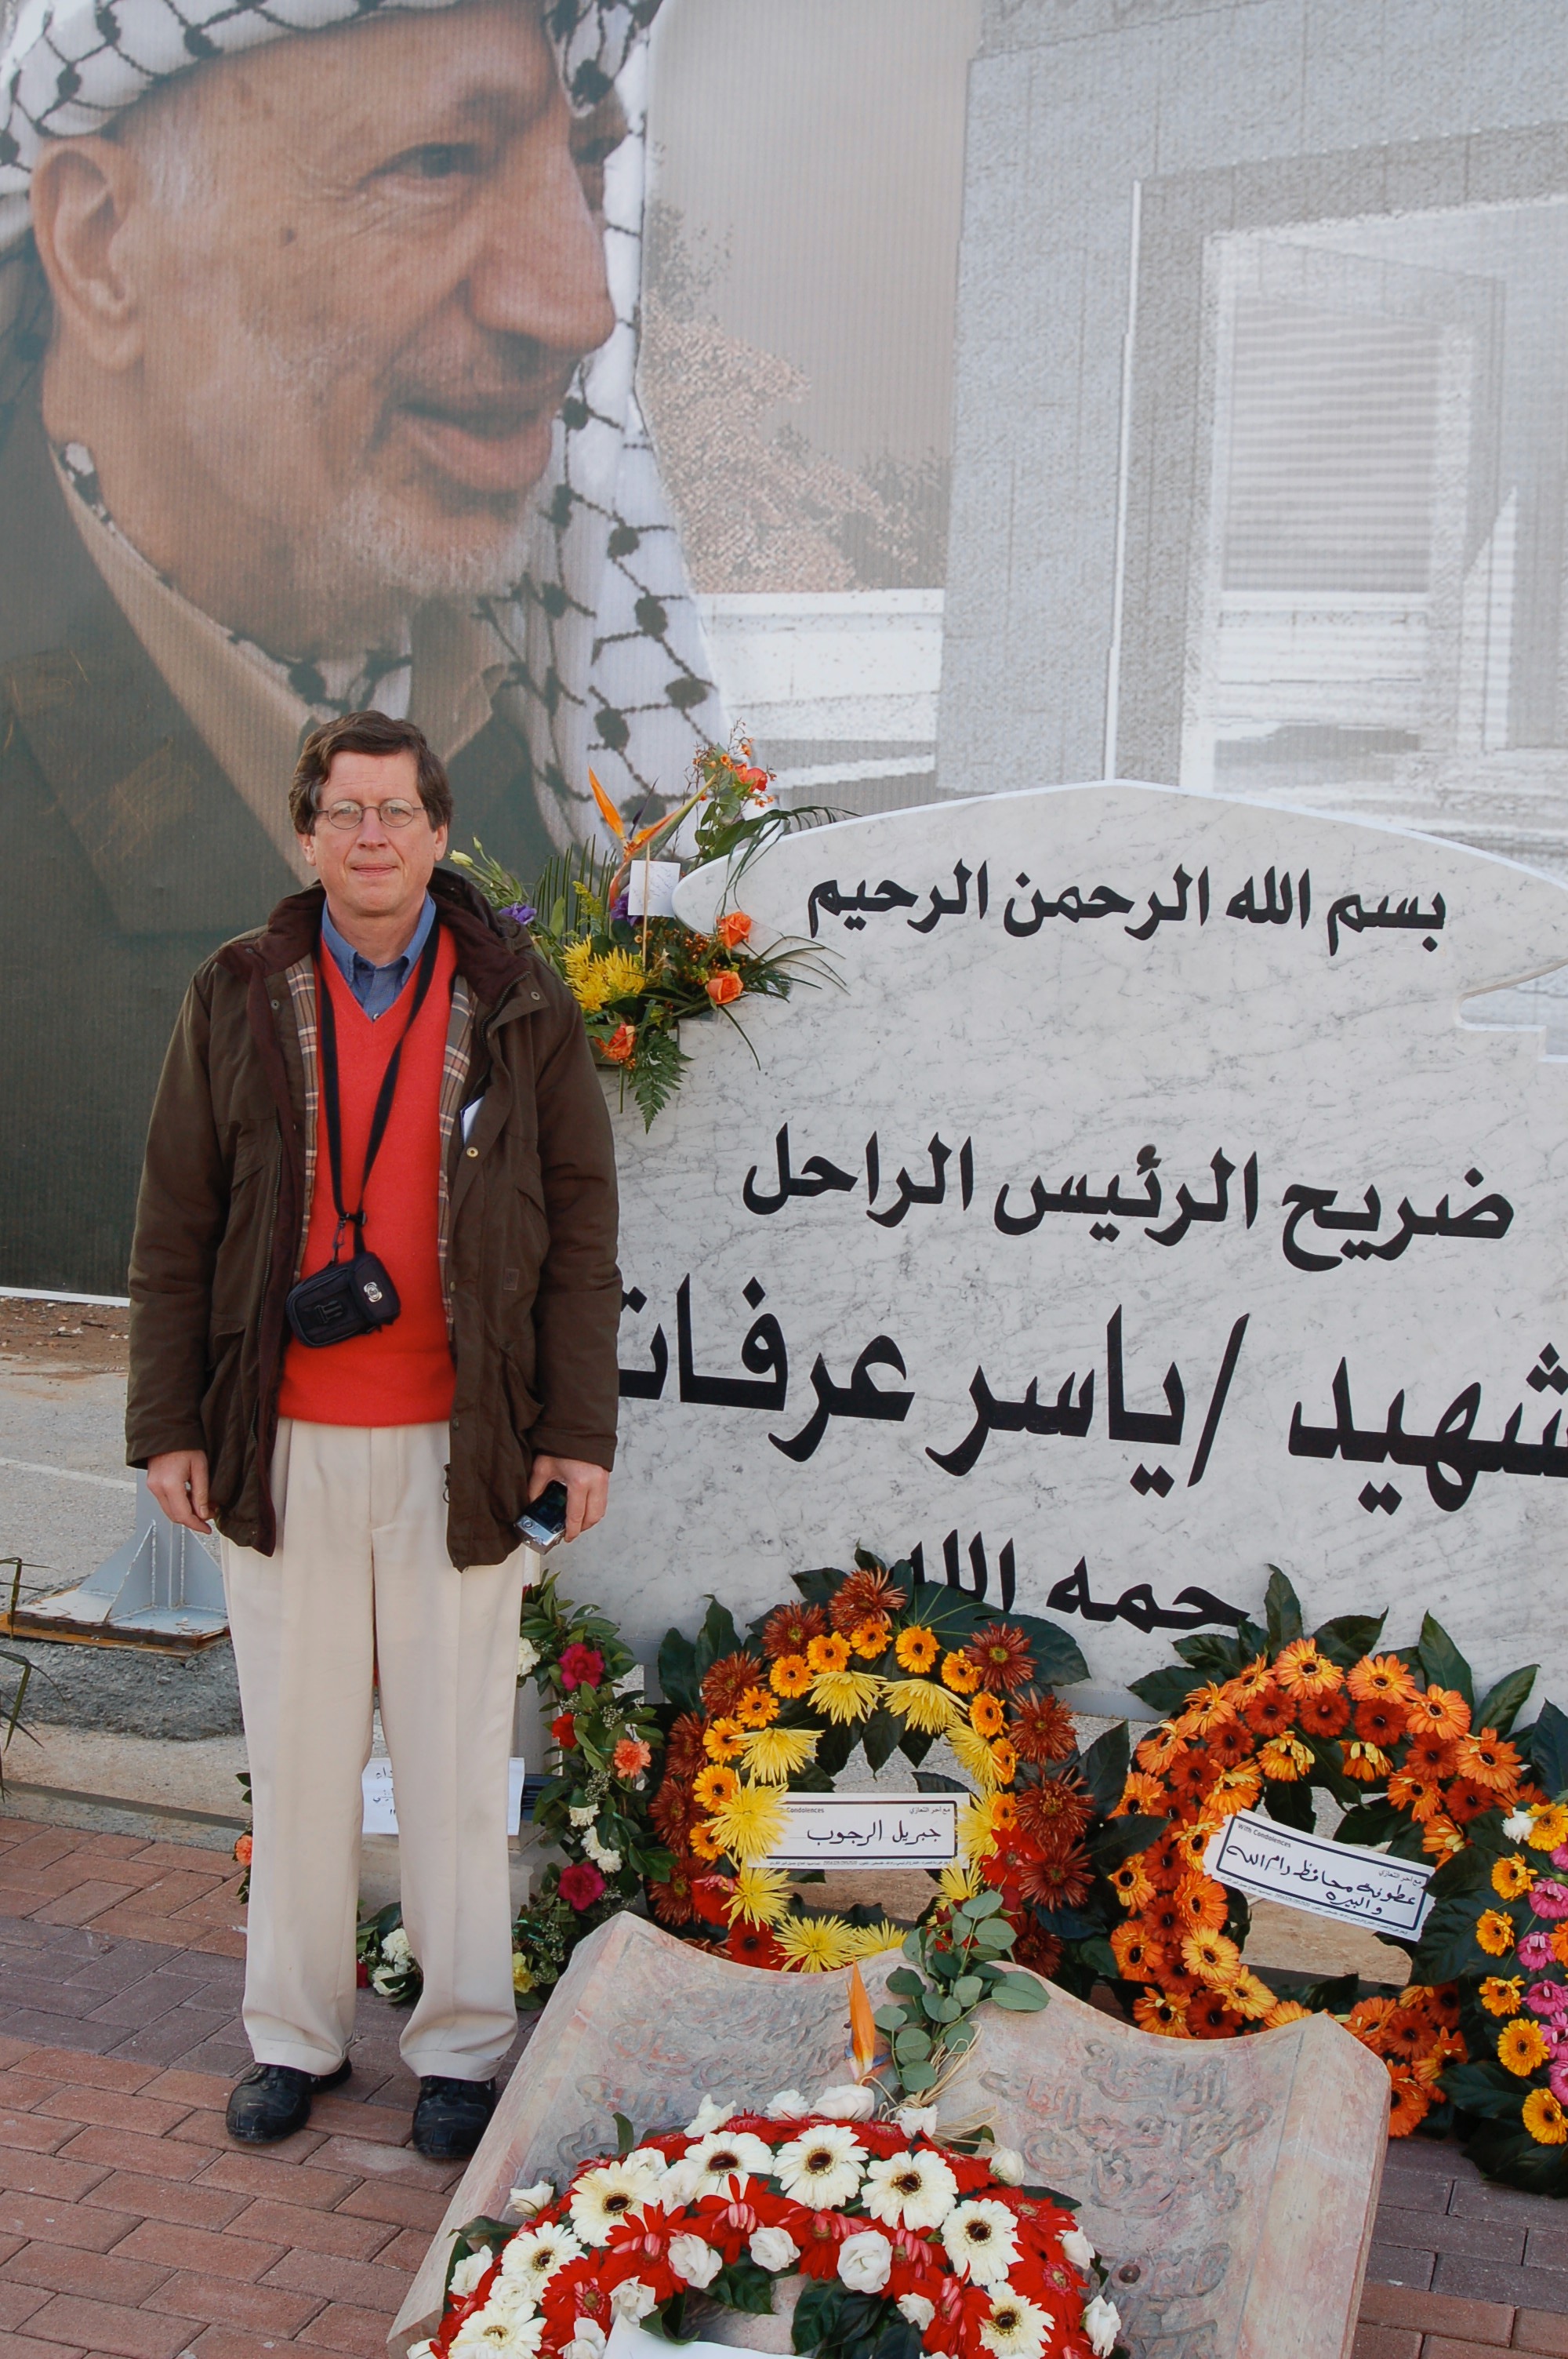 Bob at Arafat's grave